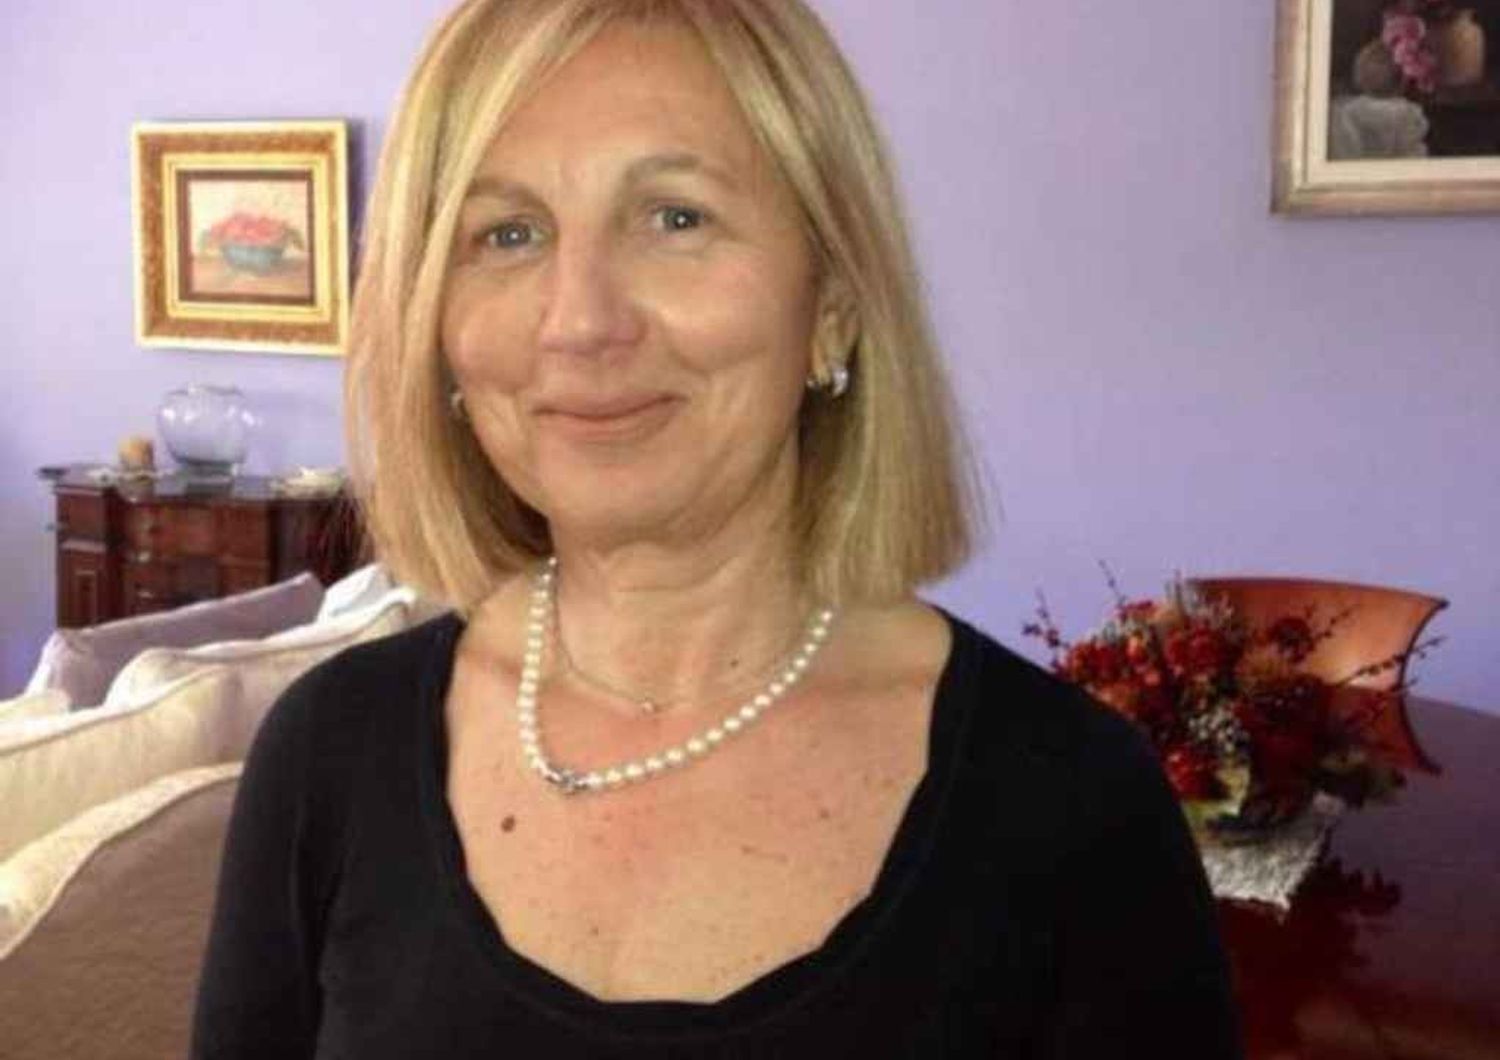 Gilberta Palleschi e' stata uccisa Trovato corpo, omicida confessa